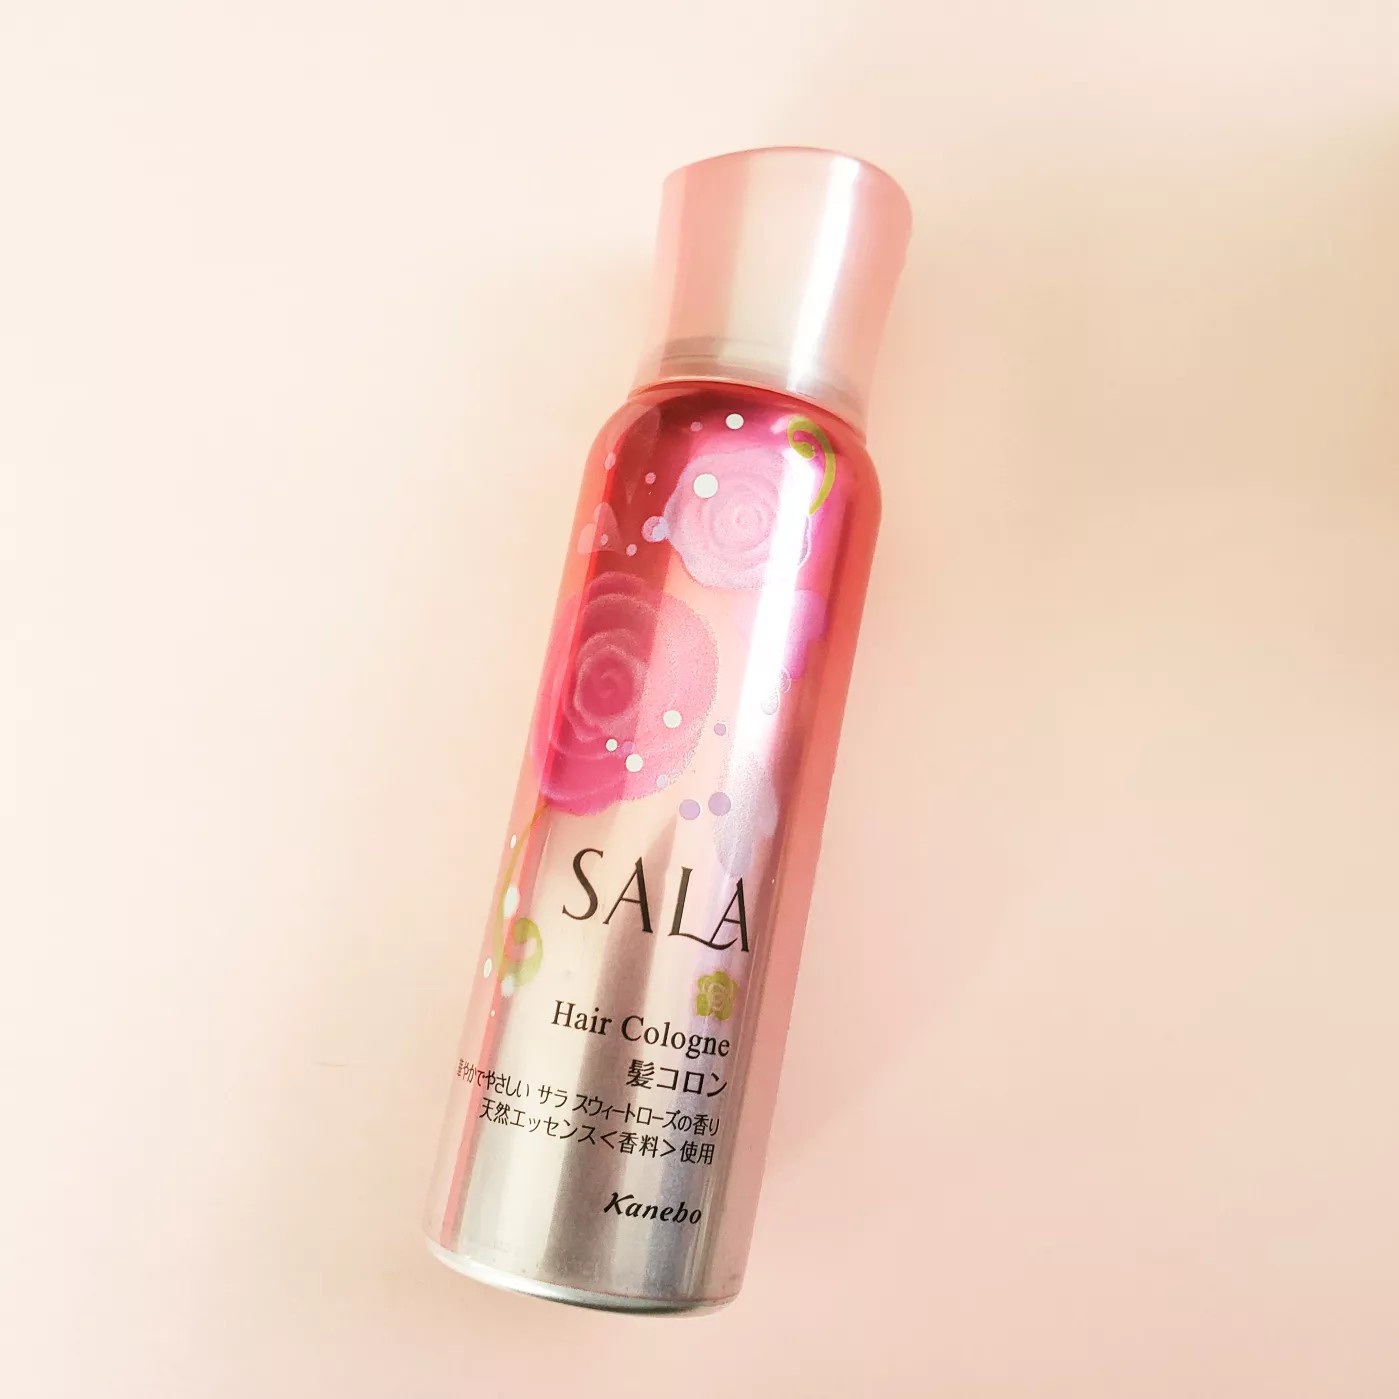 SALA(サラ) / 髪コロンB(サラ スウィートローズの香り)の公式商品情報 